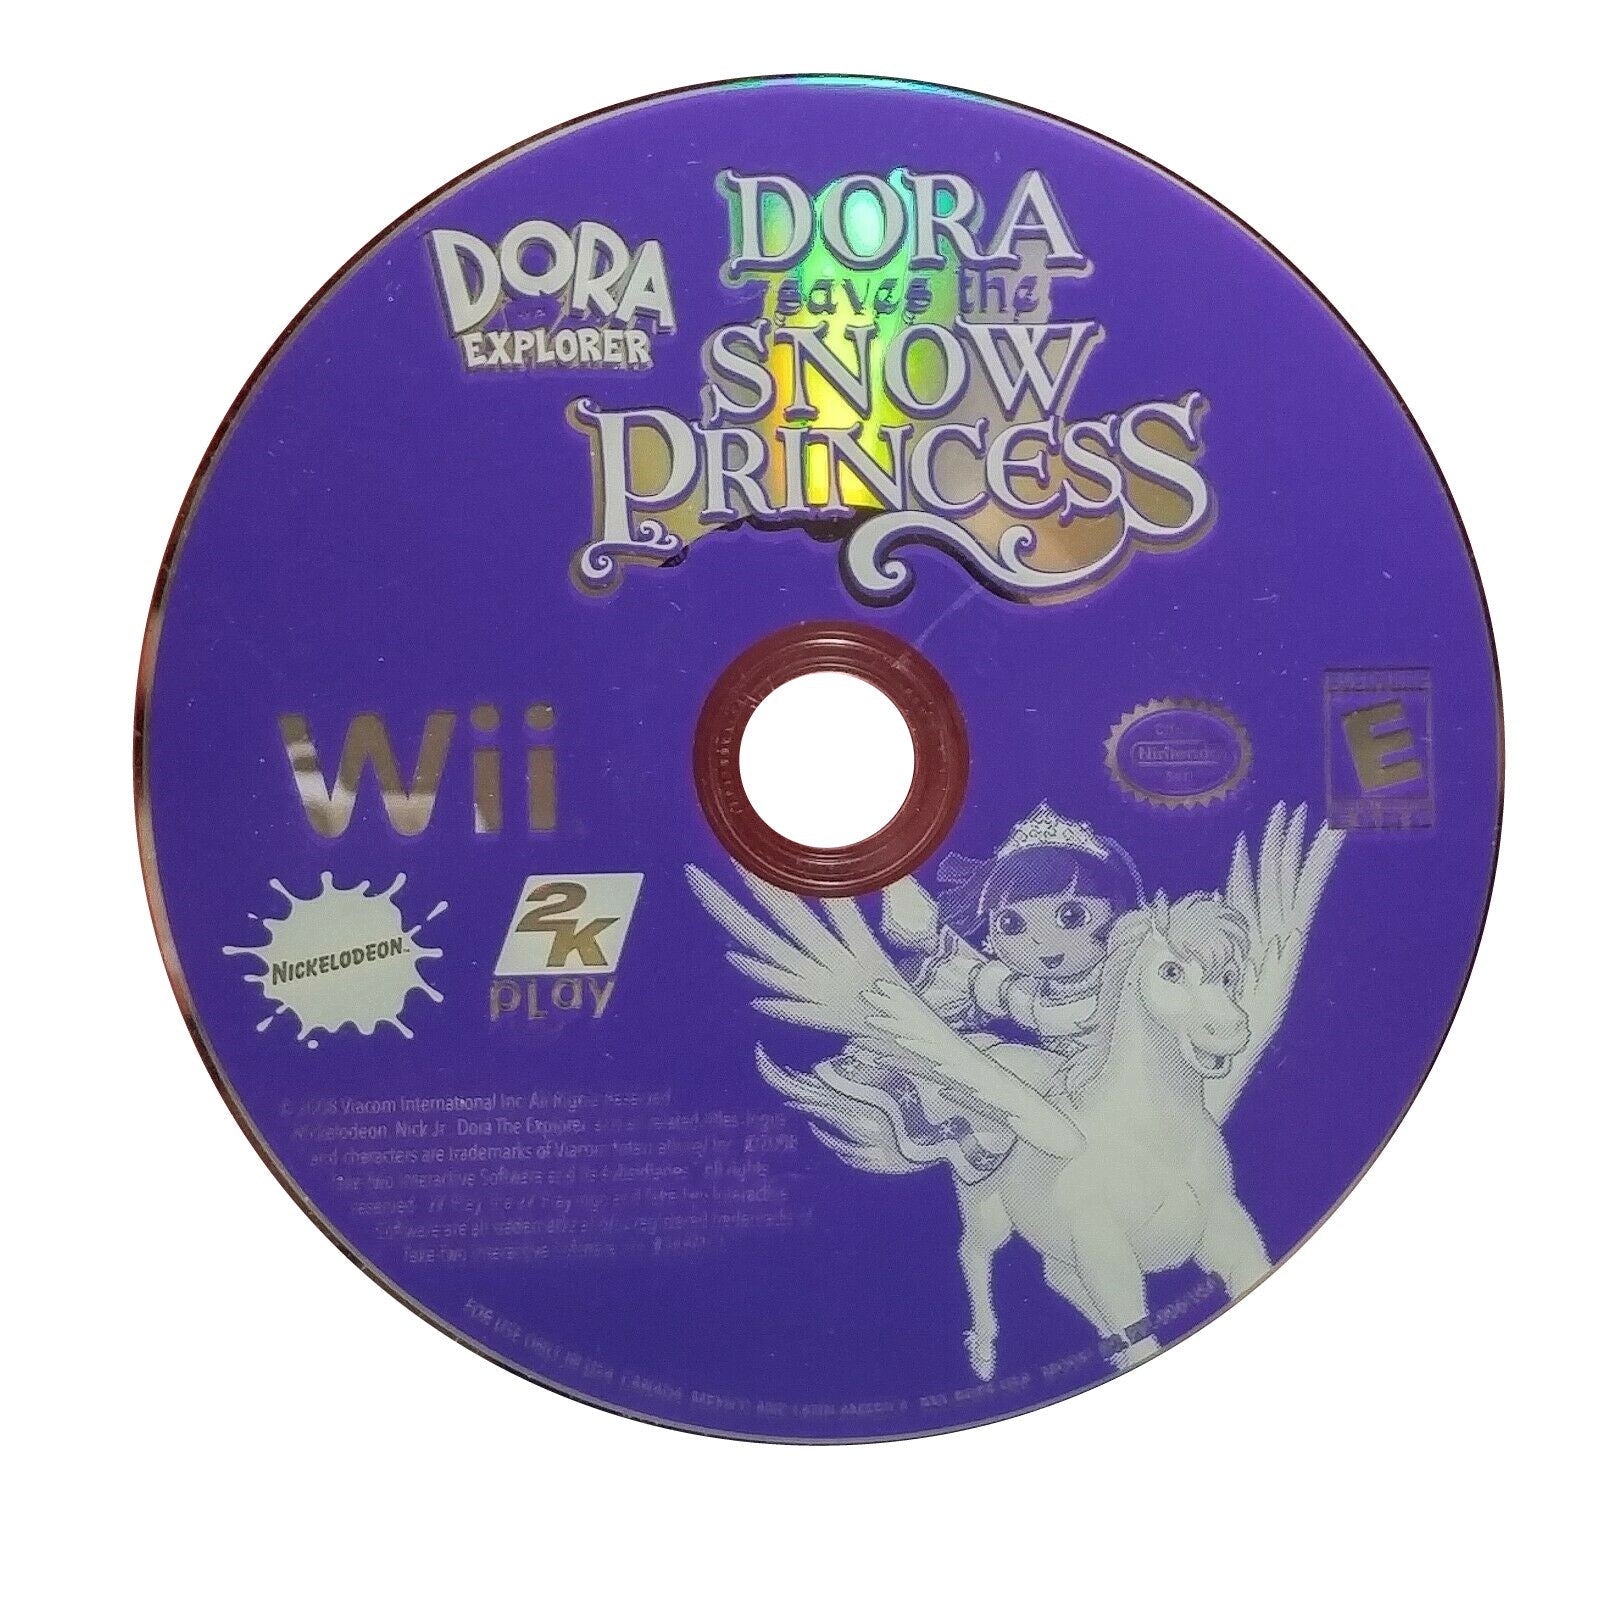 Dora the Explorer: Dora Saves the Snow Princess - Nintendo Wii Game